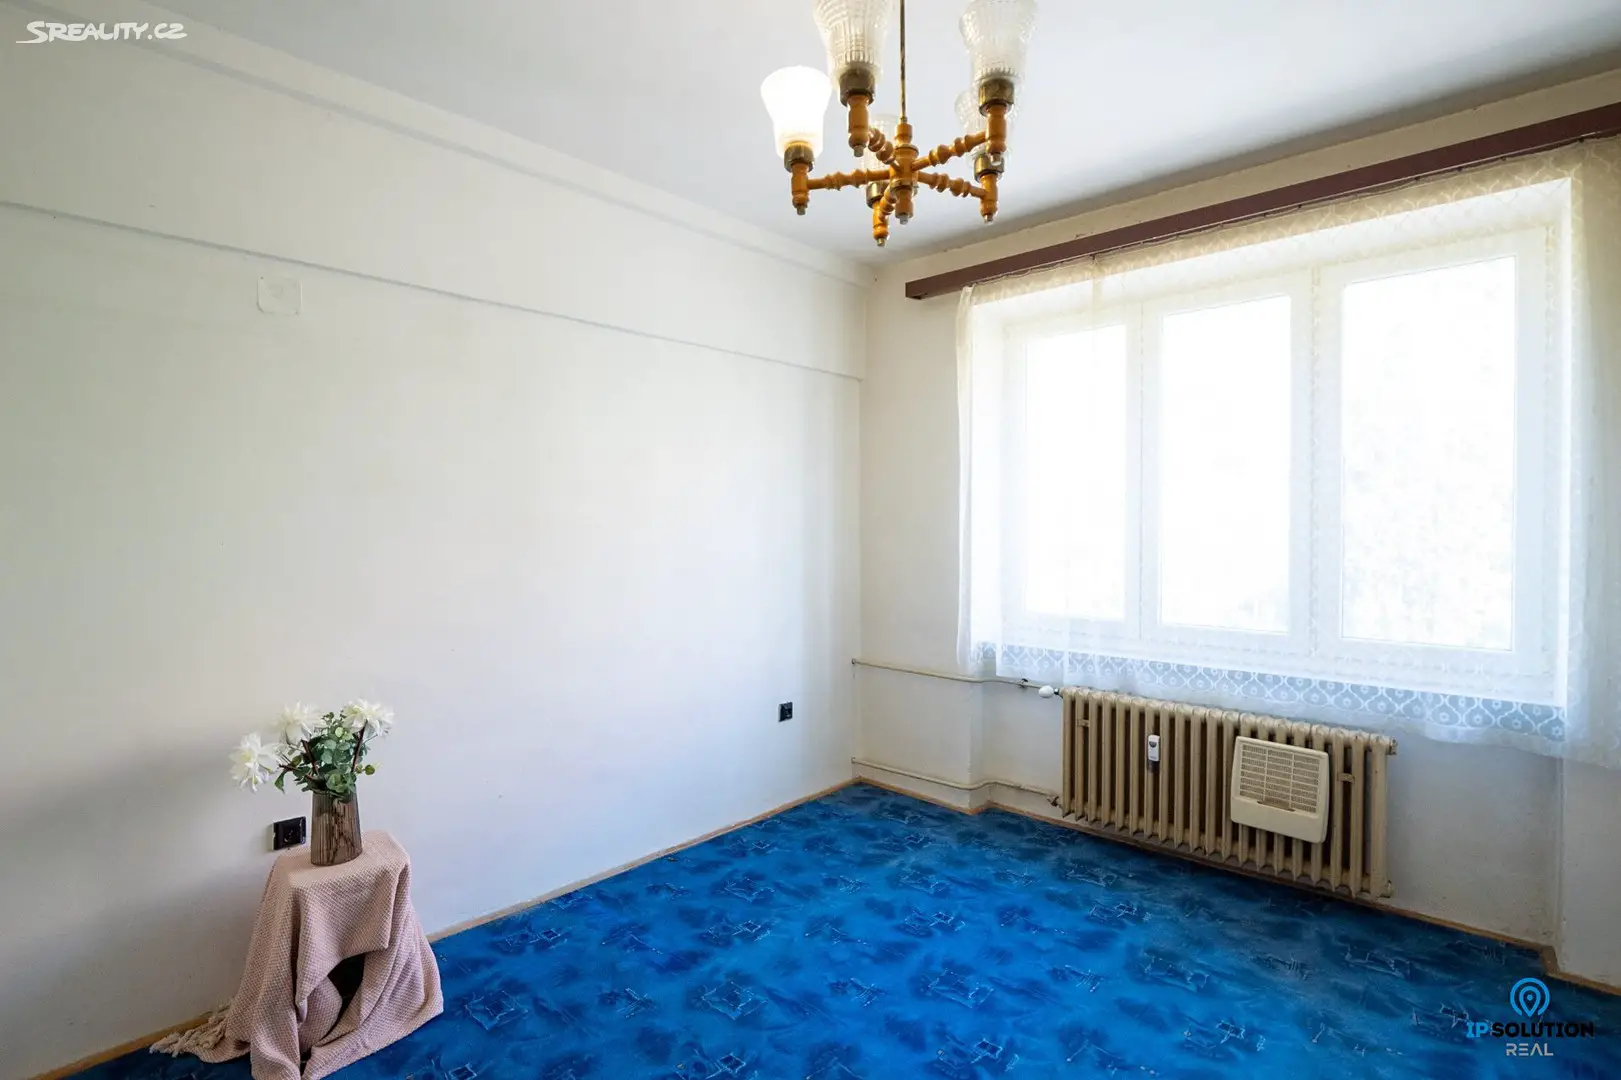 Prodej bytu 2+1 56 m², Zemědělská, Brno - Černá Pole